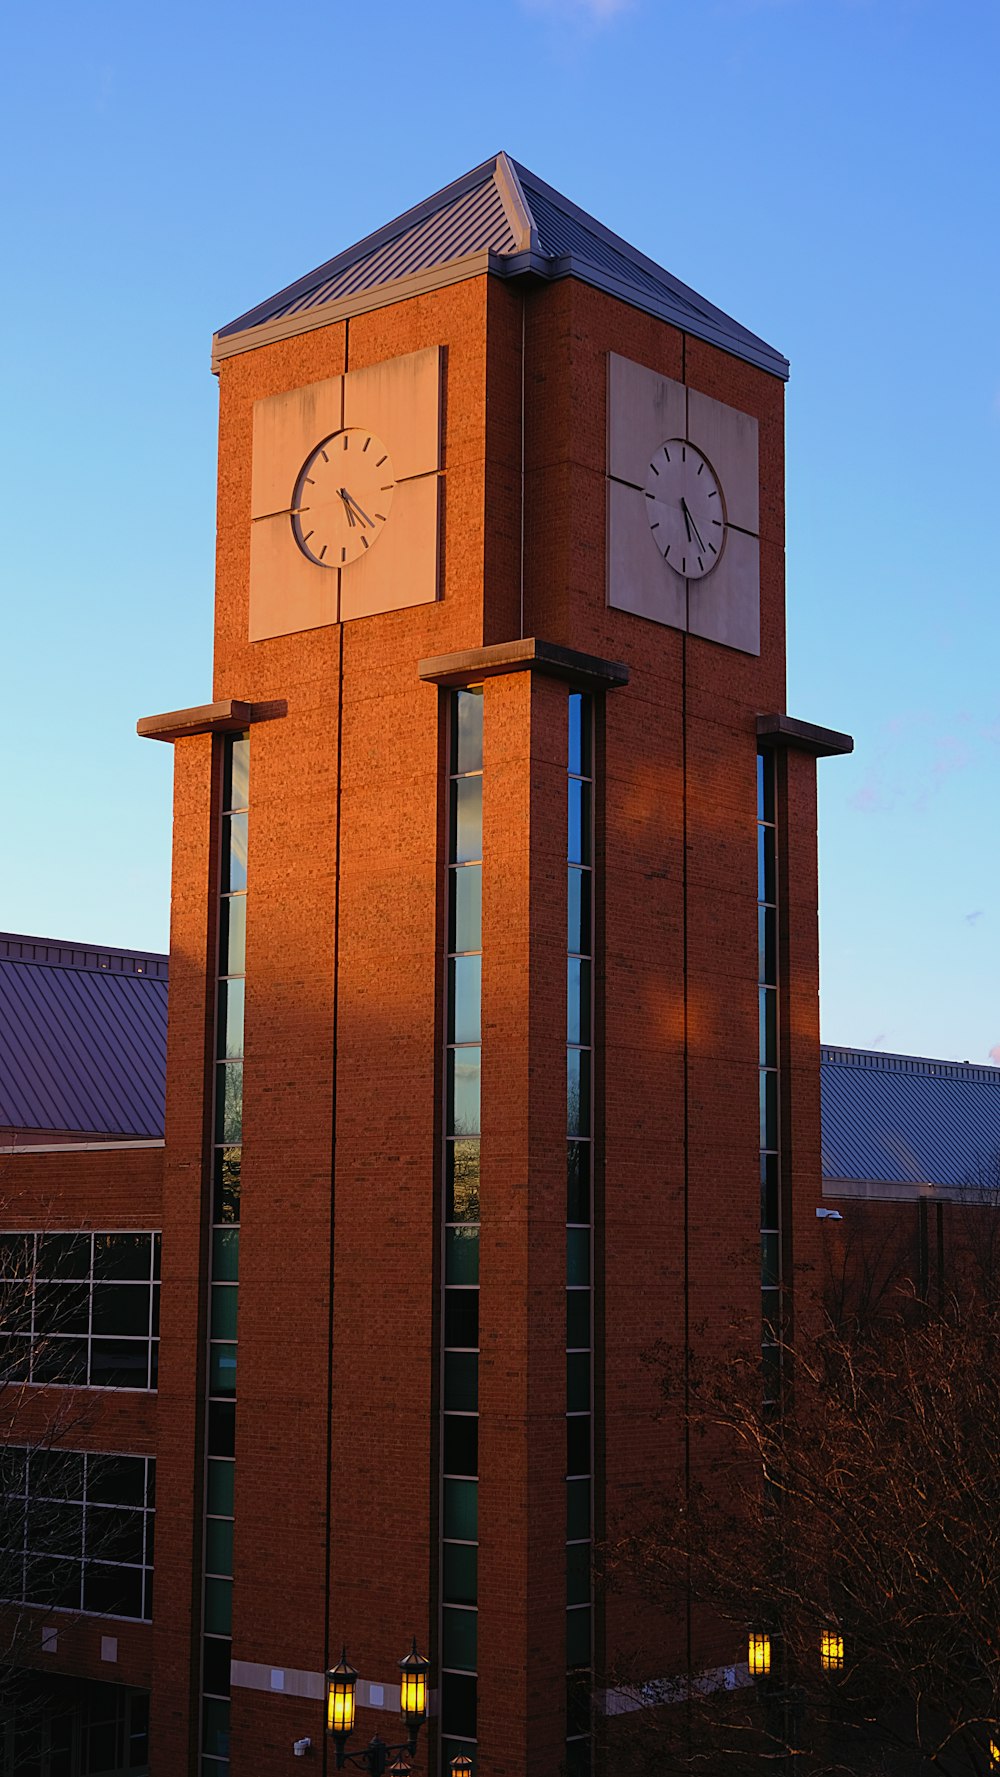 uma torre do relógio de tijolos altos com um relógio em cada um de seus lados